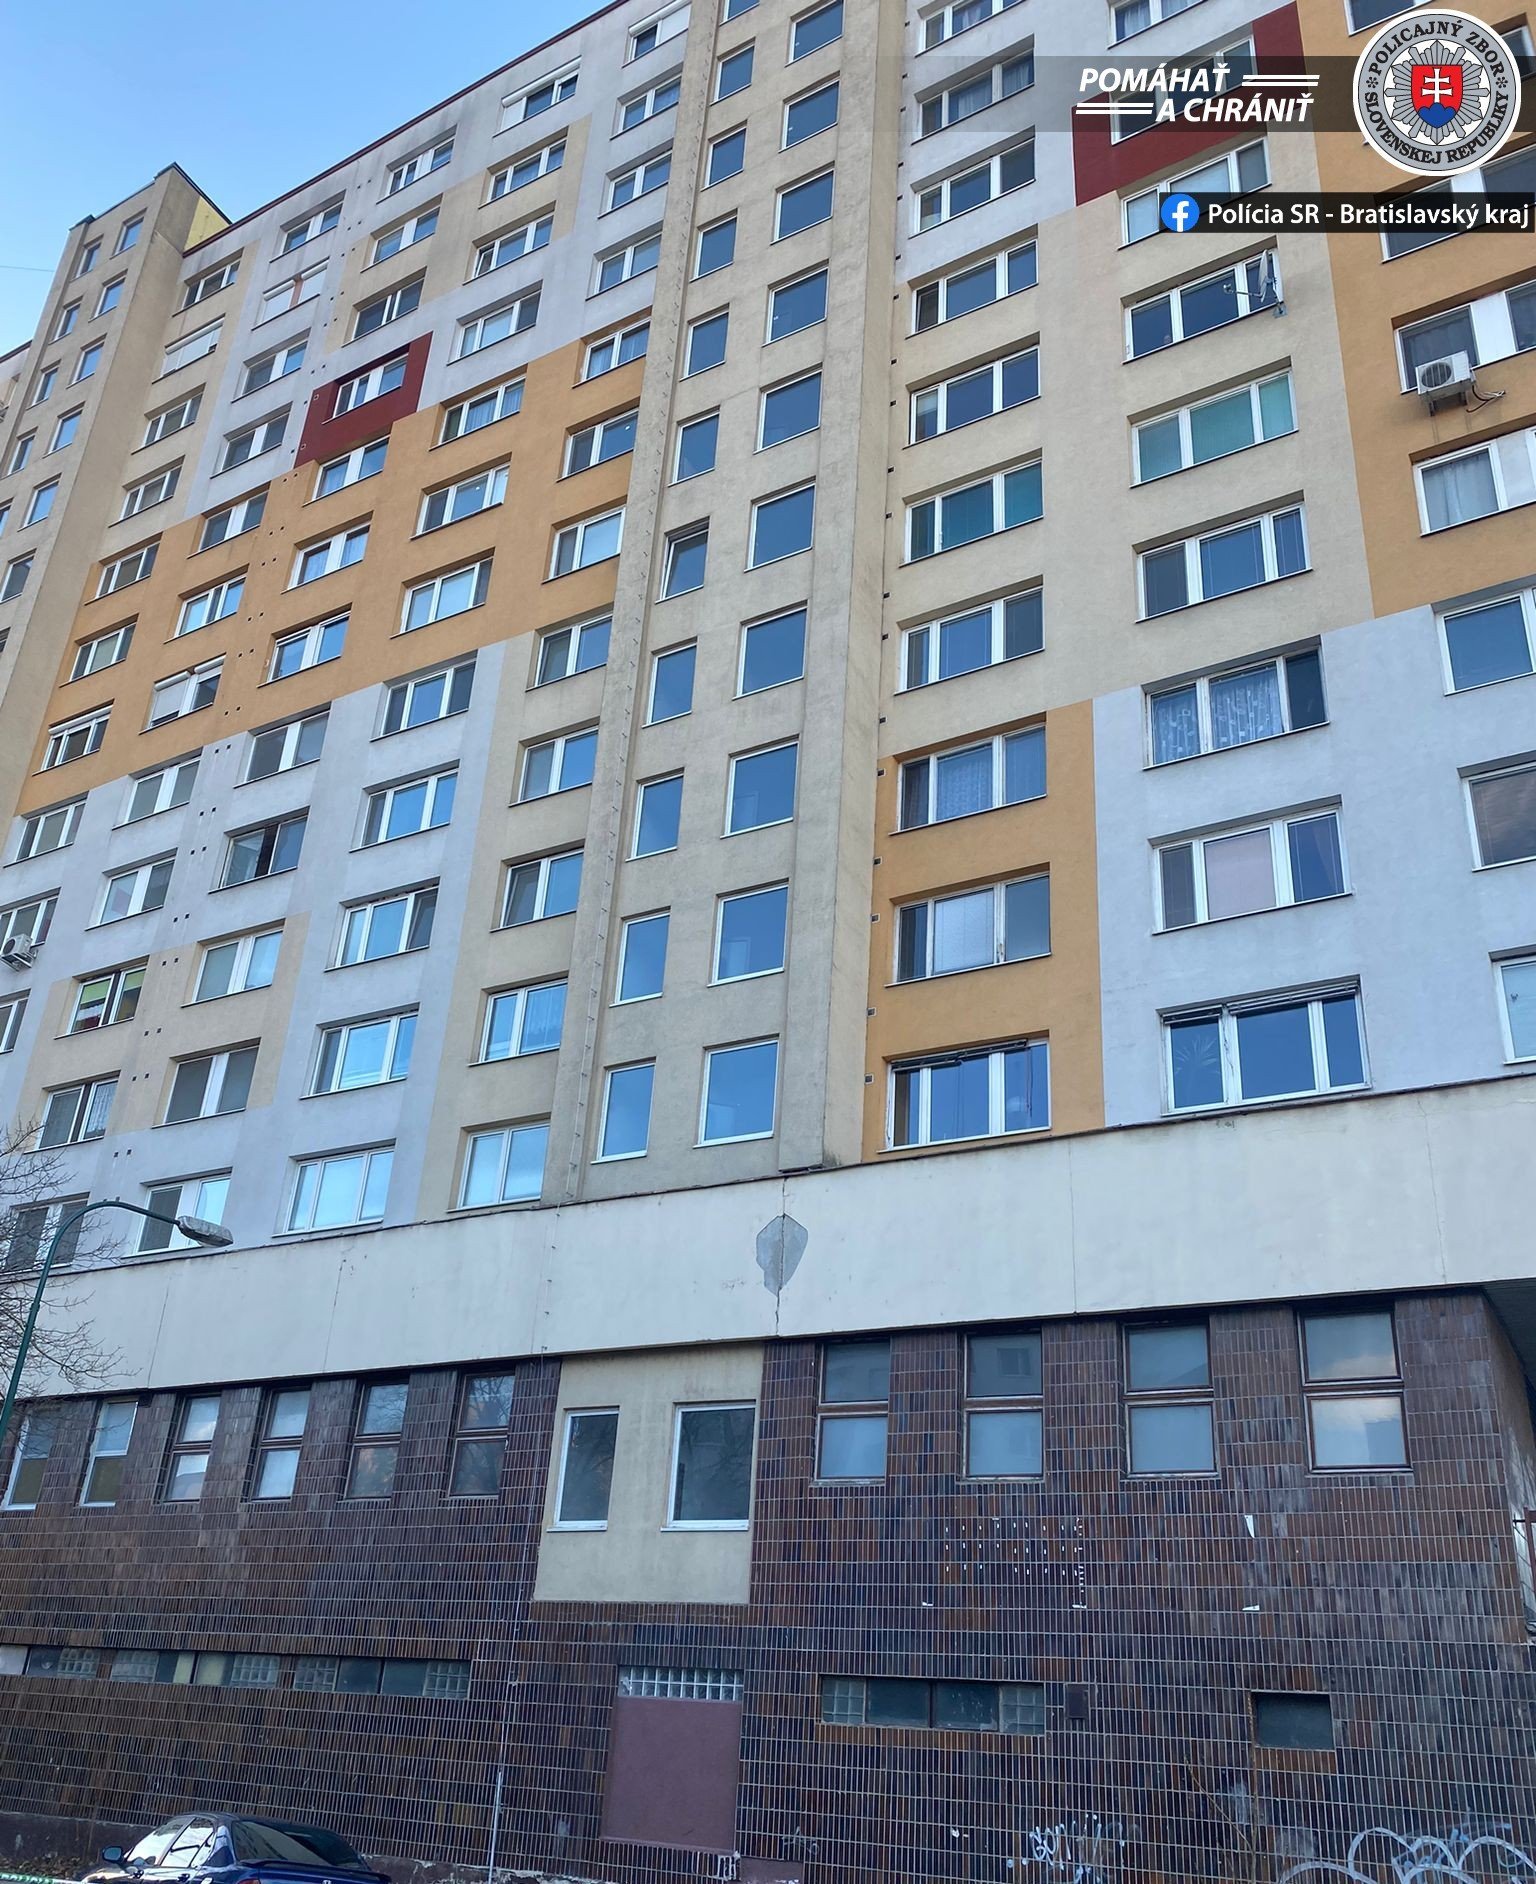 HIHETETLEN: A nyolcadik emeletről ugrott ki egy 28 éves férfi, túlélte